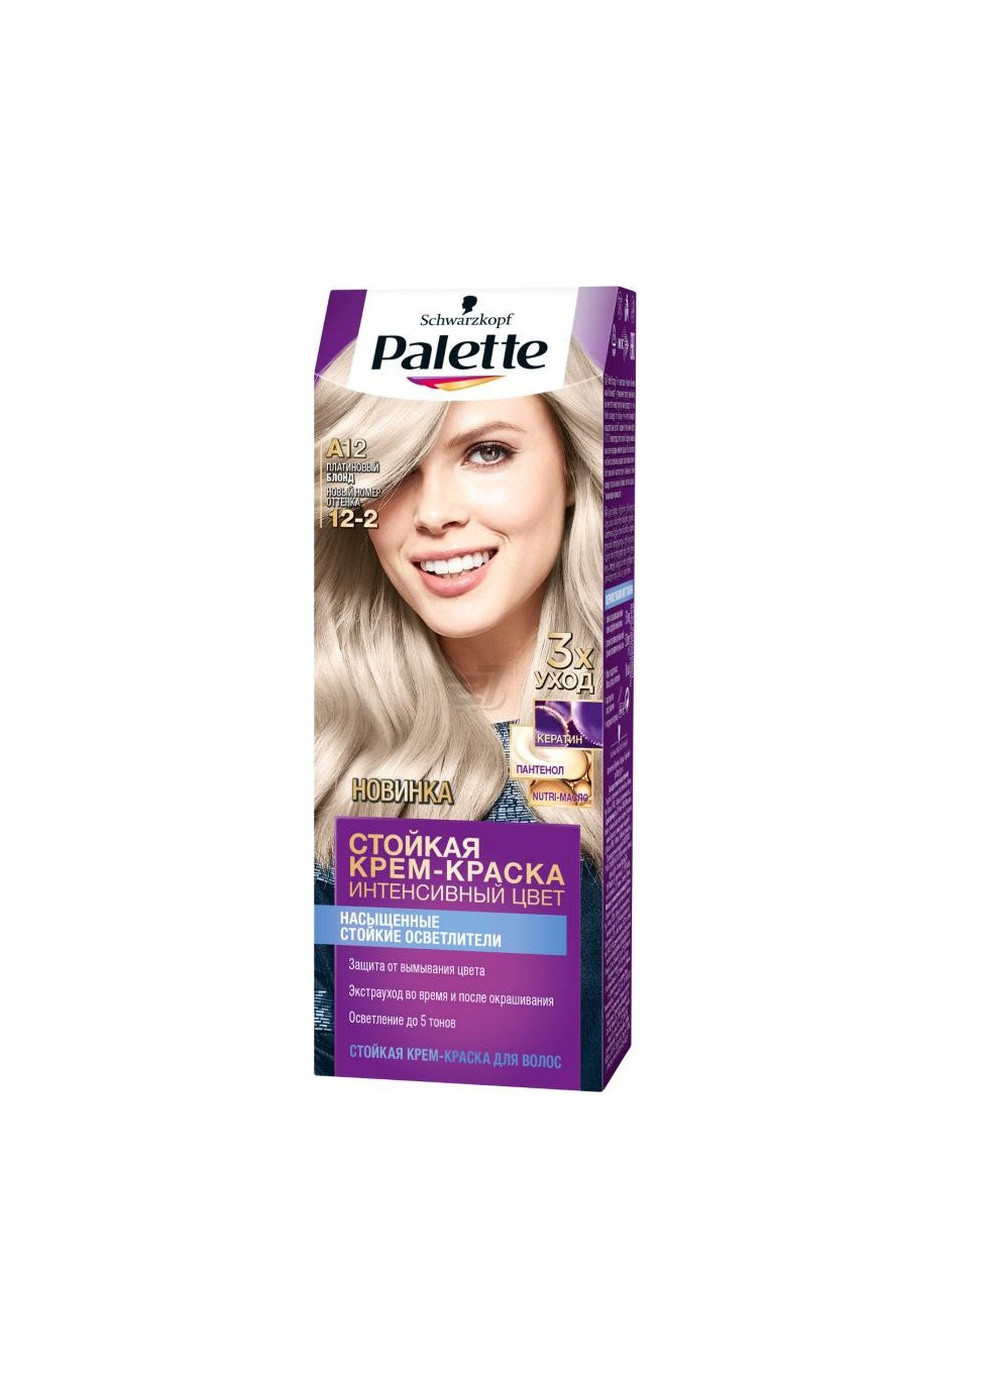 Фарба для волосся A12 (12-2) Платиновий блонд 110 мл Palette (213708517)